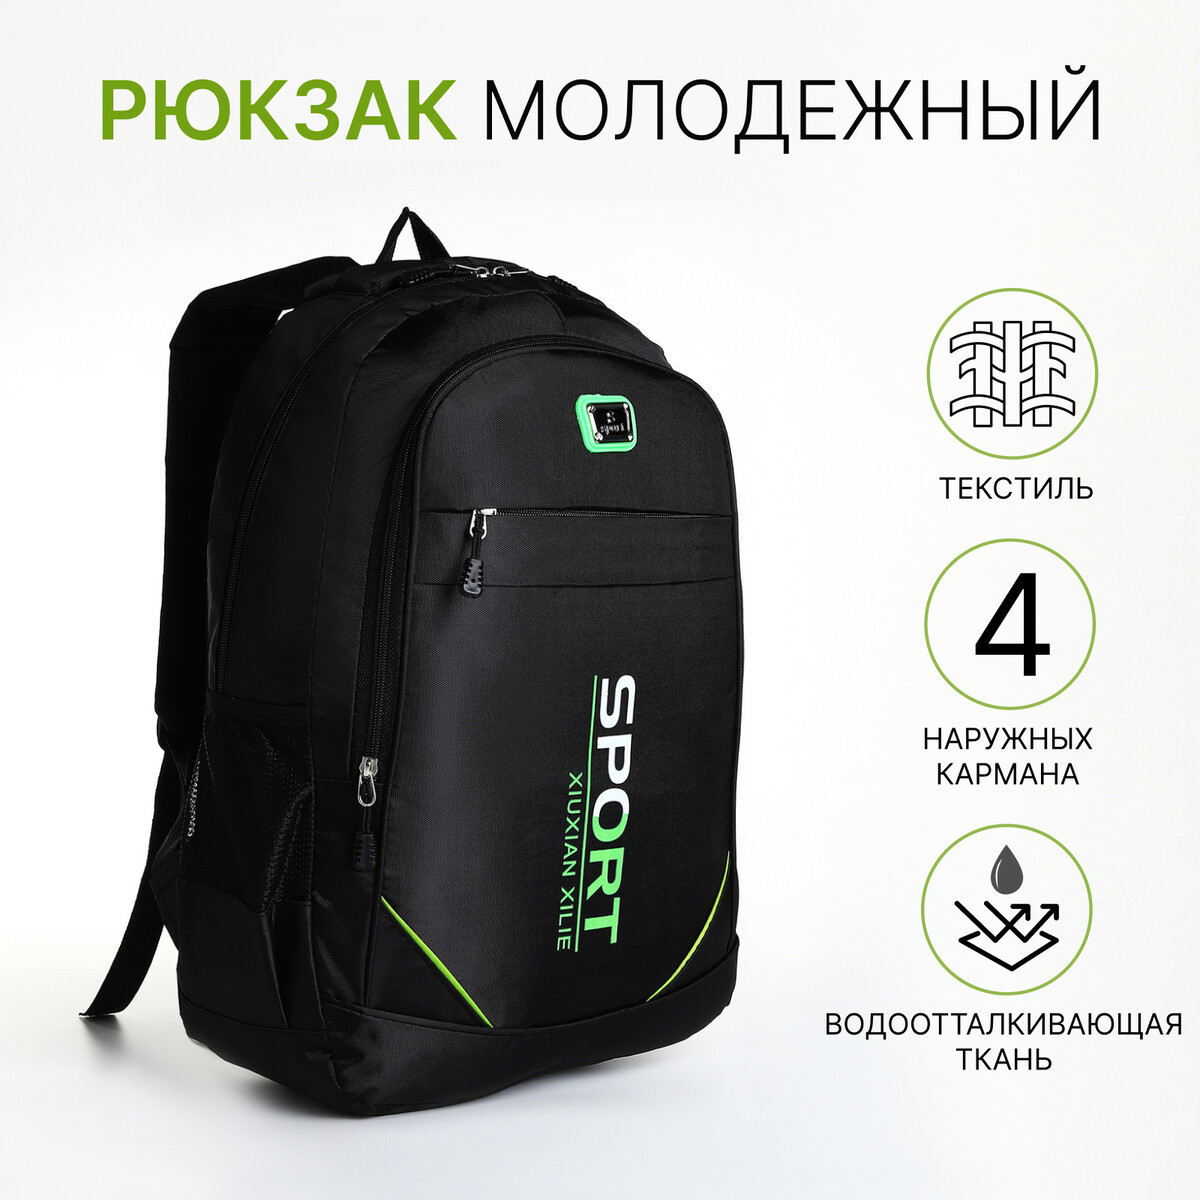 Рюкзак молодежный из текстиля на молнии, 4 кармана, цвет черный/зеленый рюкзак молодежный из текстиля на молнии 3 кармана зеленый